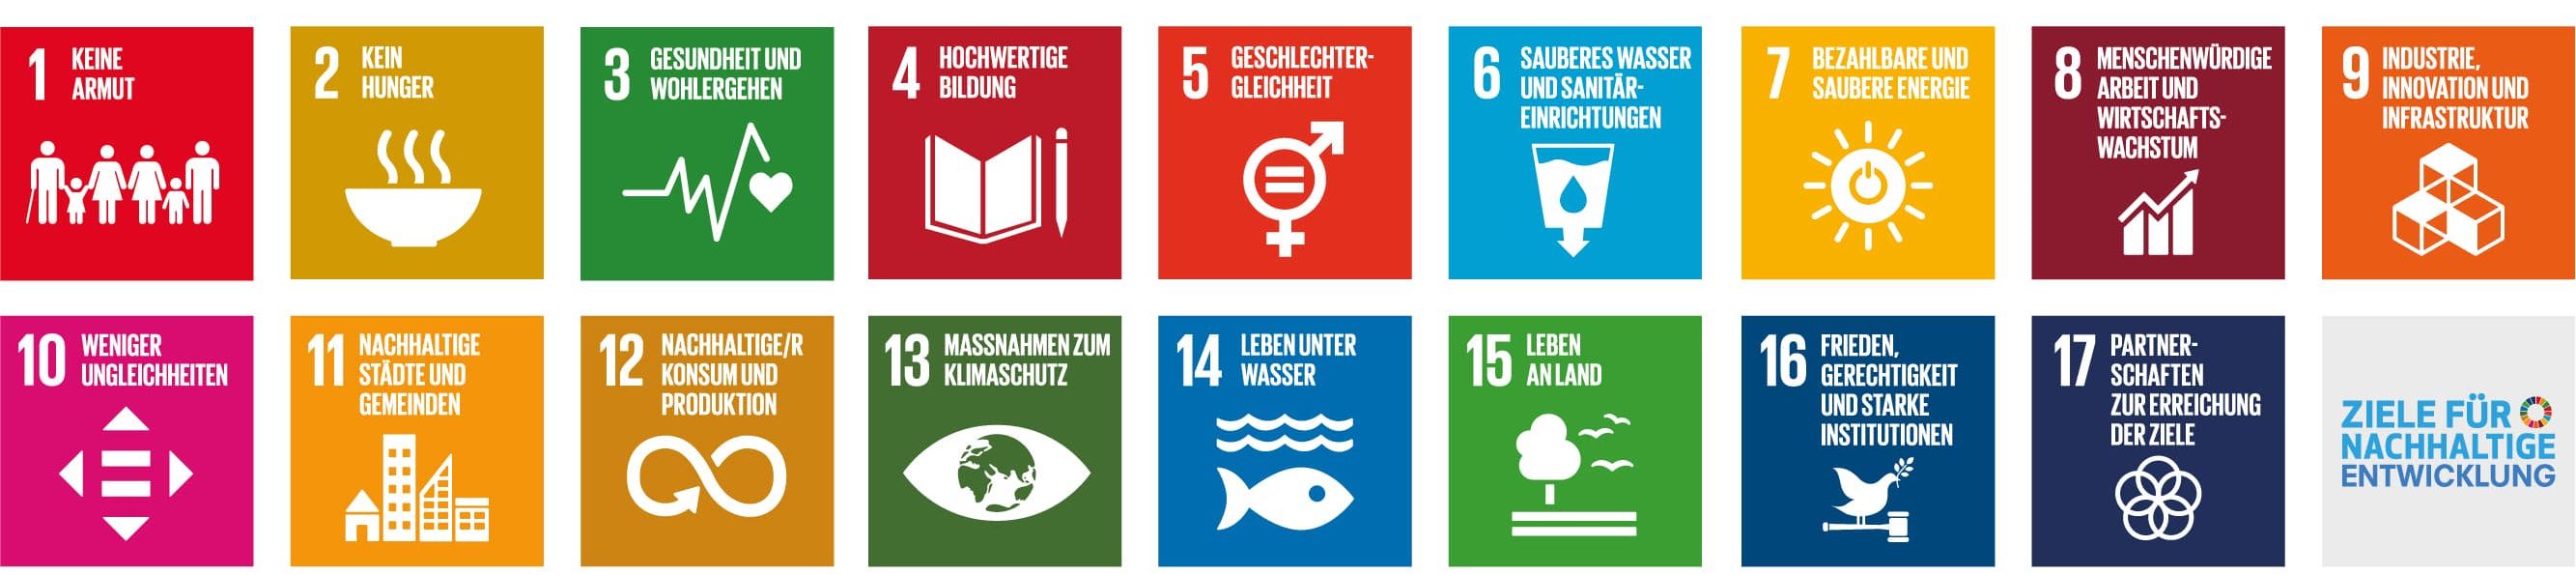 17 Ziele der nachhaltigen Entwicklung als farbige Icons